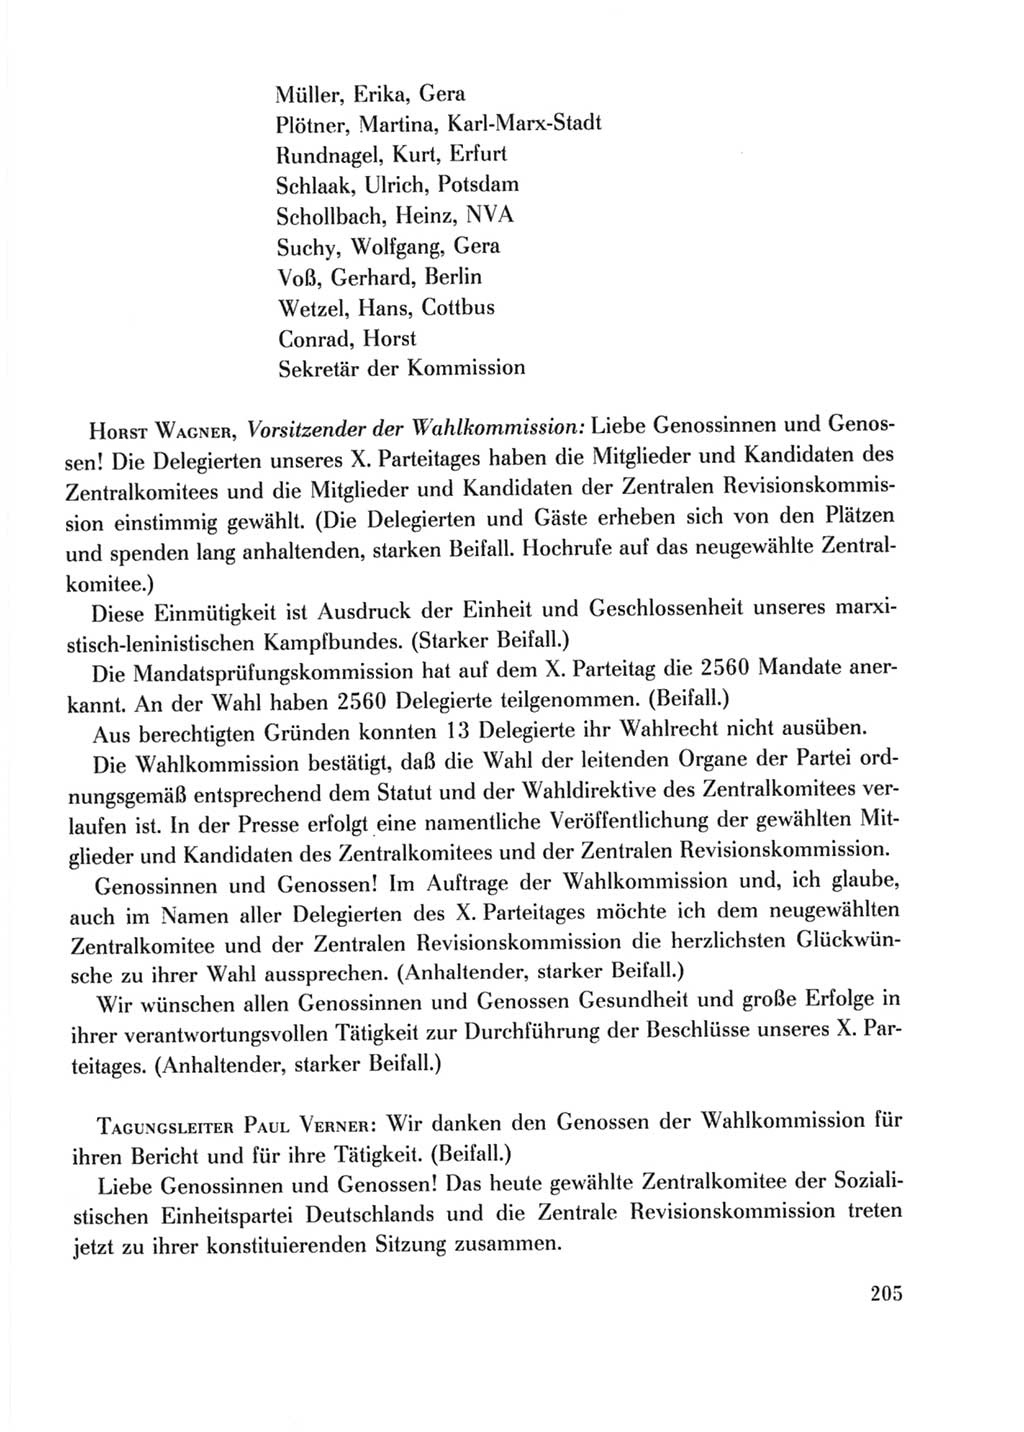 Protokoll der Verhandlungen des Ⅹ. Parteitages der Sozialistischen Einheitspartei Deutschlands (SED) [Deutsche Demokratische Republik (DDR)] 1981, Band 2, Seite 205 (Prot. Verh. Ⅹ. PT SED DDR 1981, Bd. 2, S. 205)